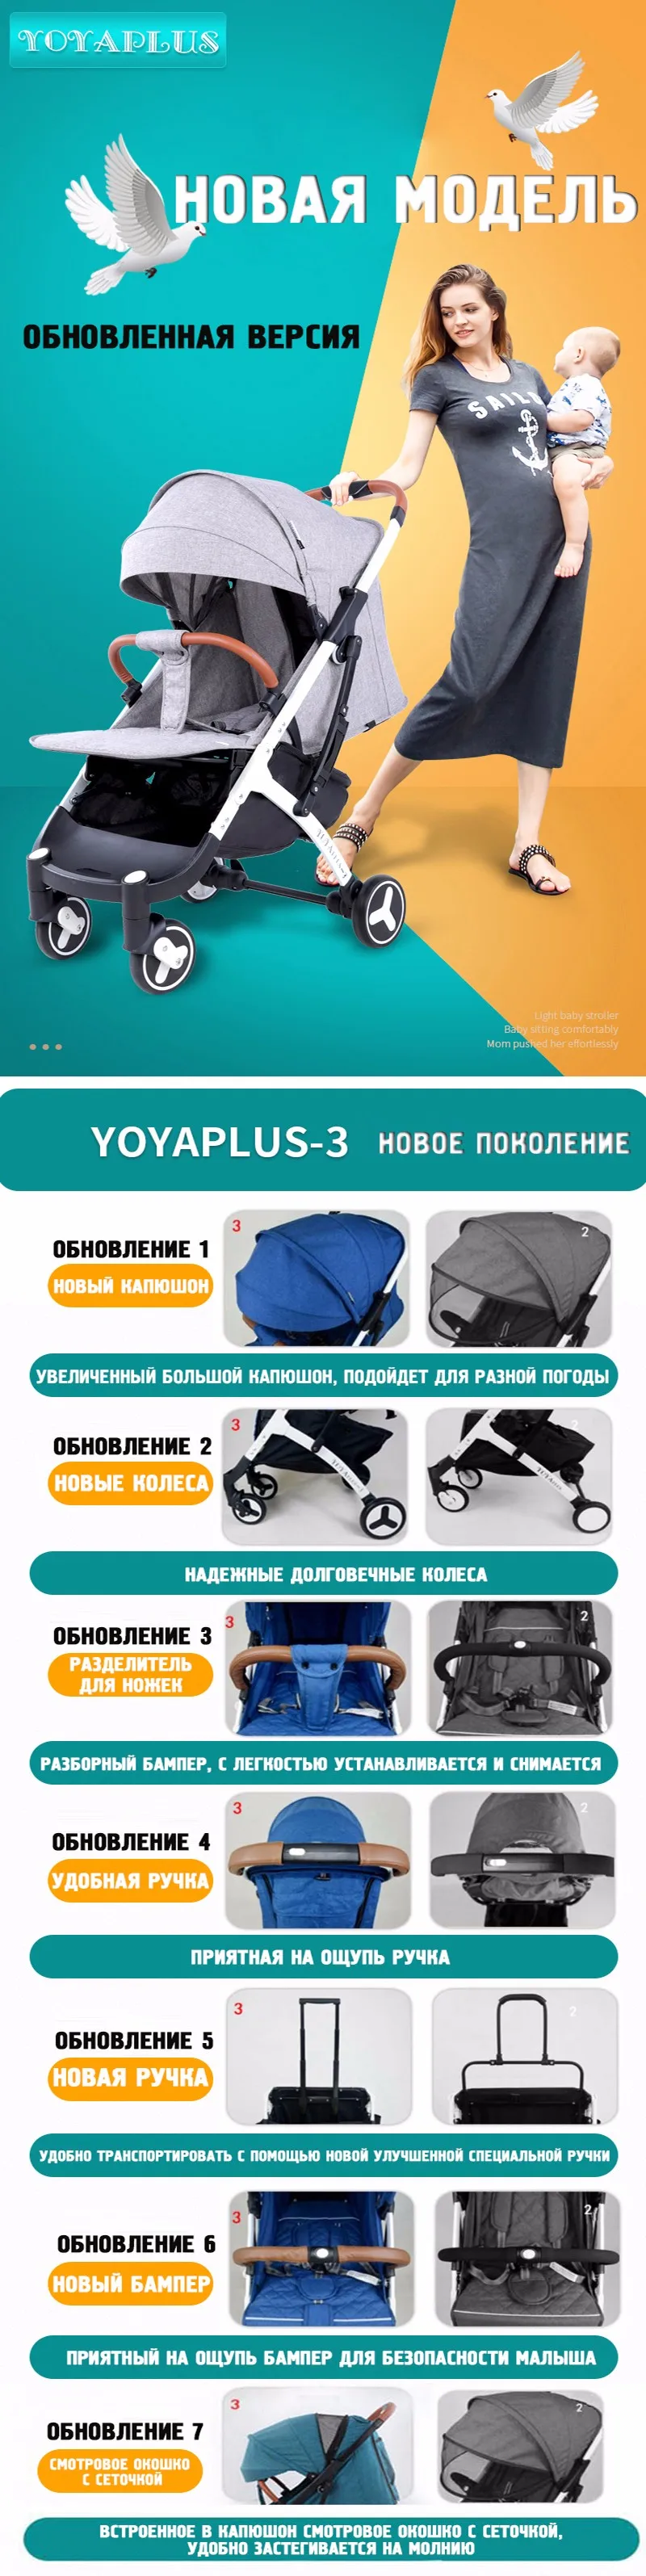 YOYA Plus 3 коляска yoya Plus детская коляска 9 подарков детская коляска дизайн легкая коляска Carrinho de Bebe